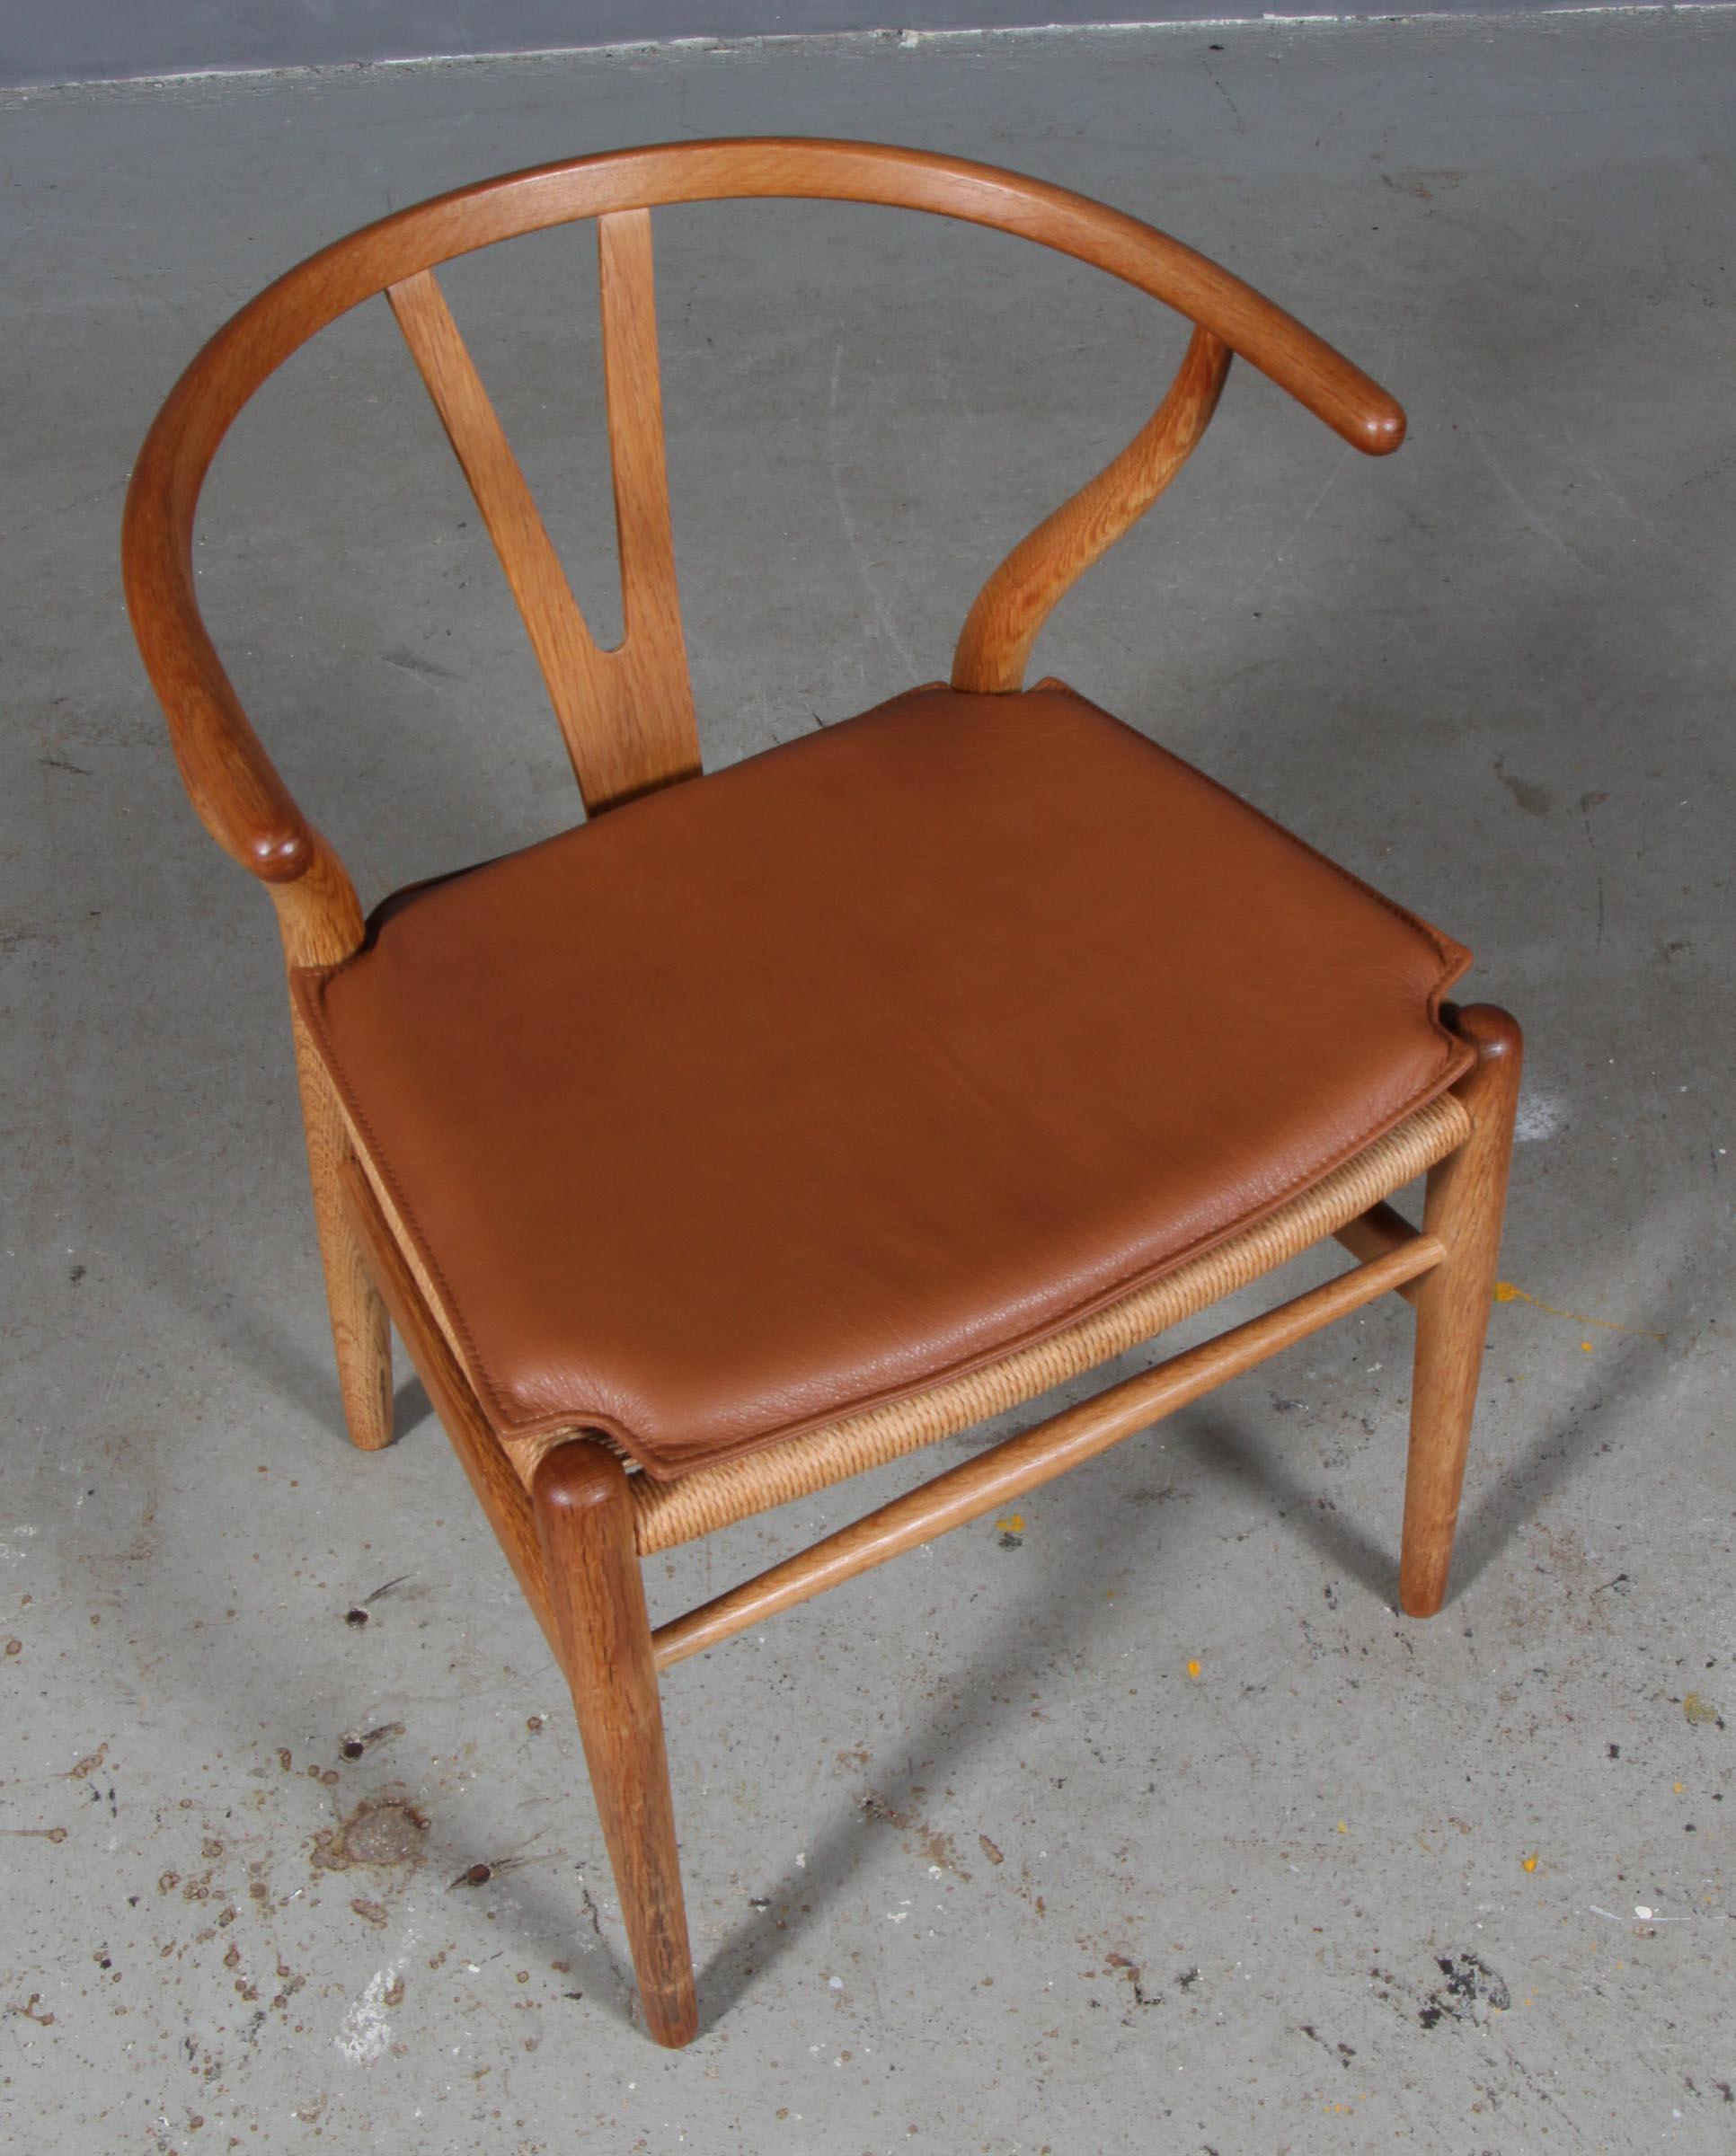 Coussins Hans J. Wegner pour la chaise wishbone modèle CH24.

Fabriqué en cuir pur aniline cognac et en mousse de bonne qualité.

Seulement le coussin, pas la chaise.